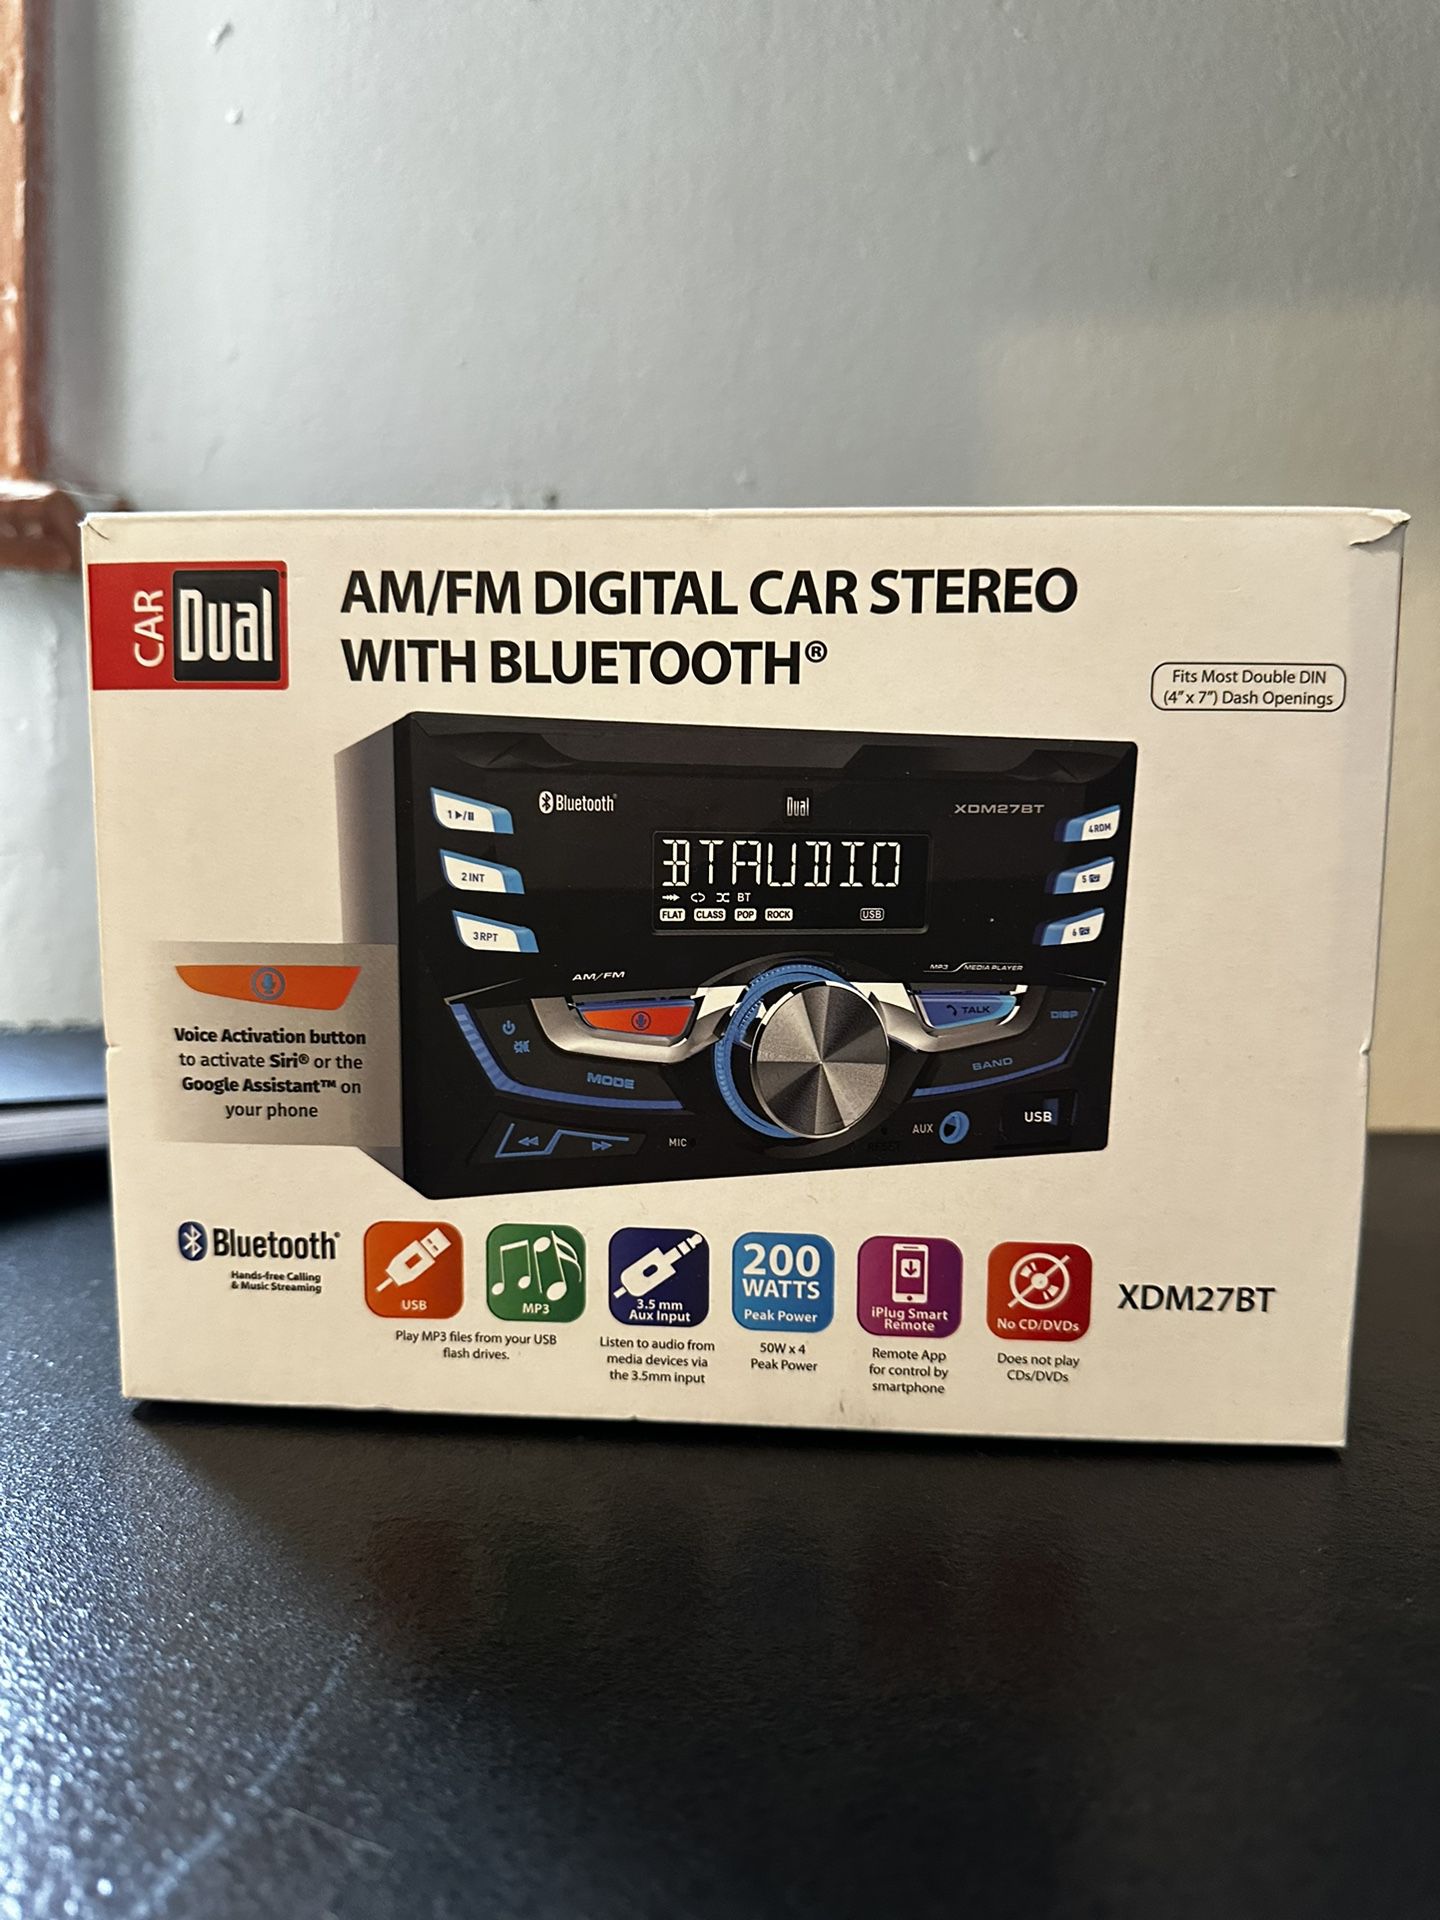 Dual AM/FM Digital Car Stereo With Bluetooth 